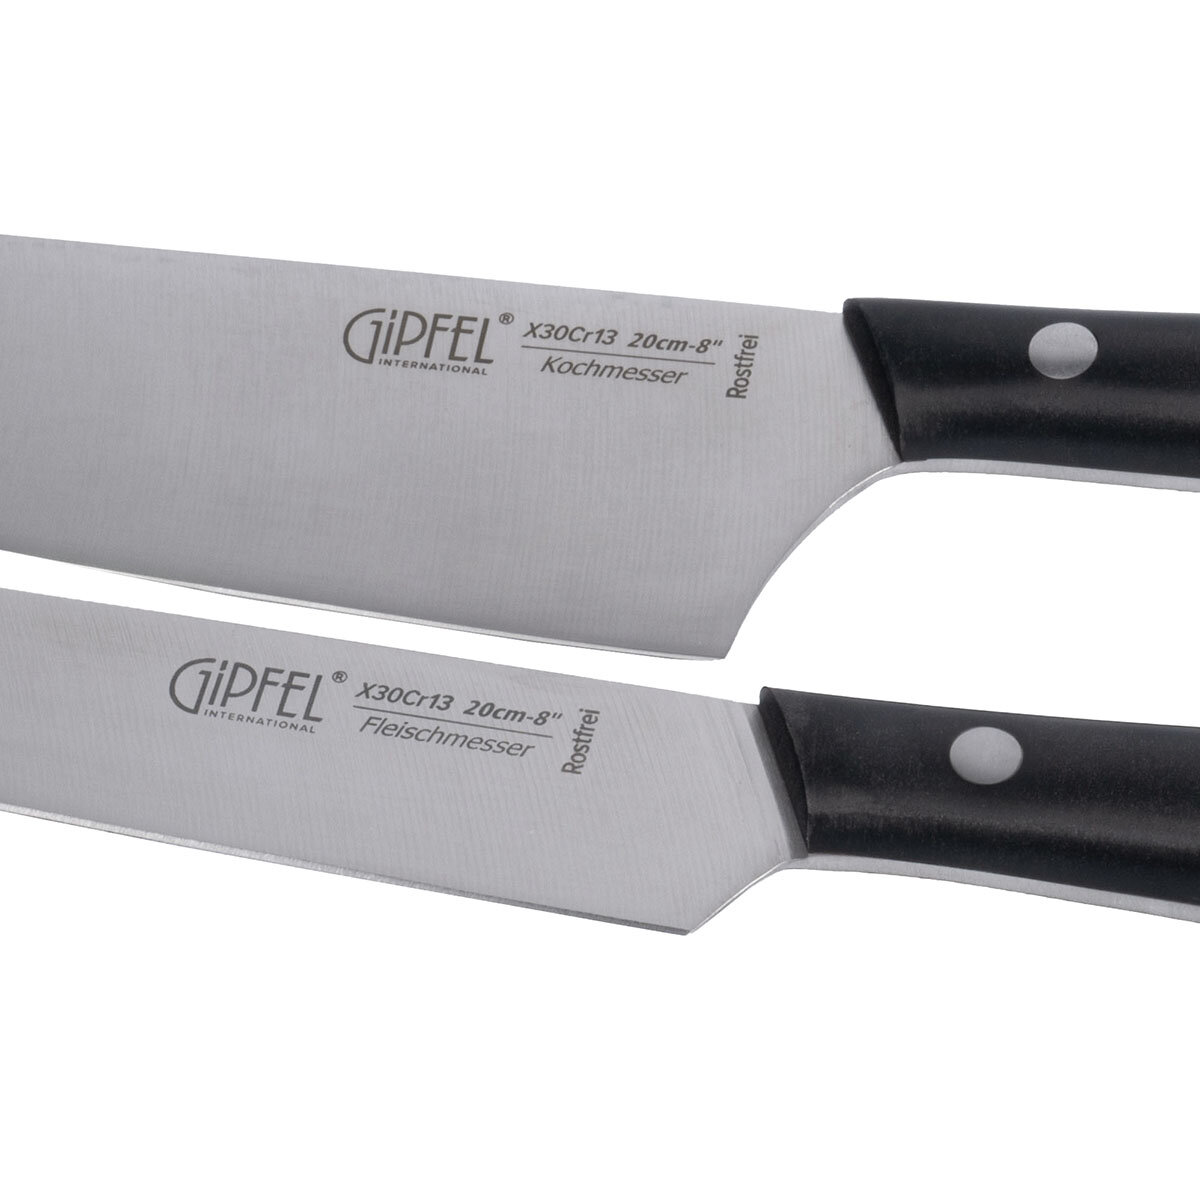 Набор кухонных ножей Gipfel Domaso 51695